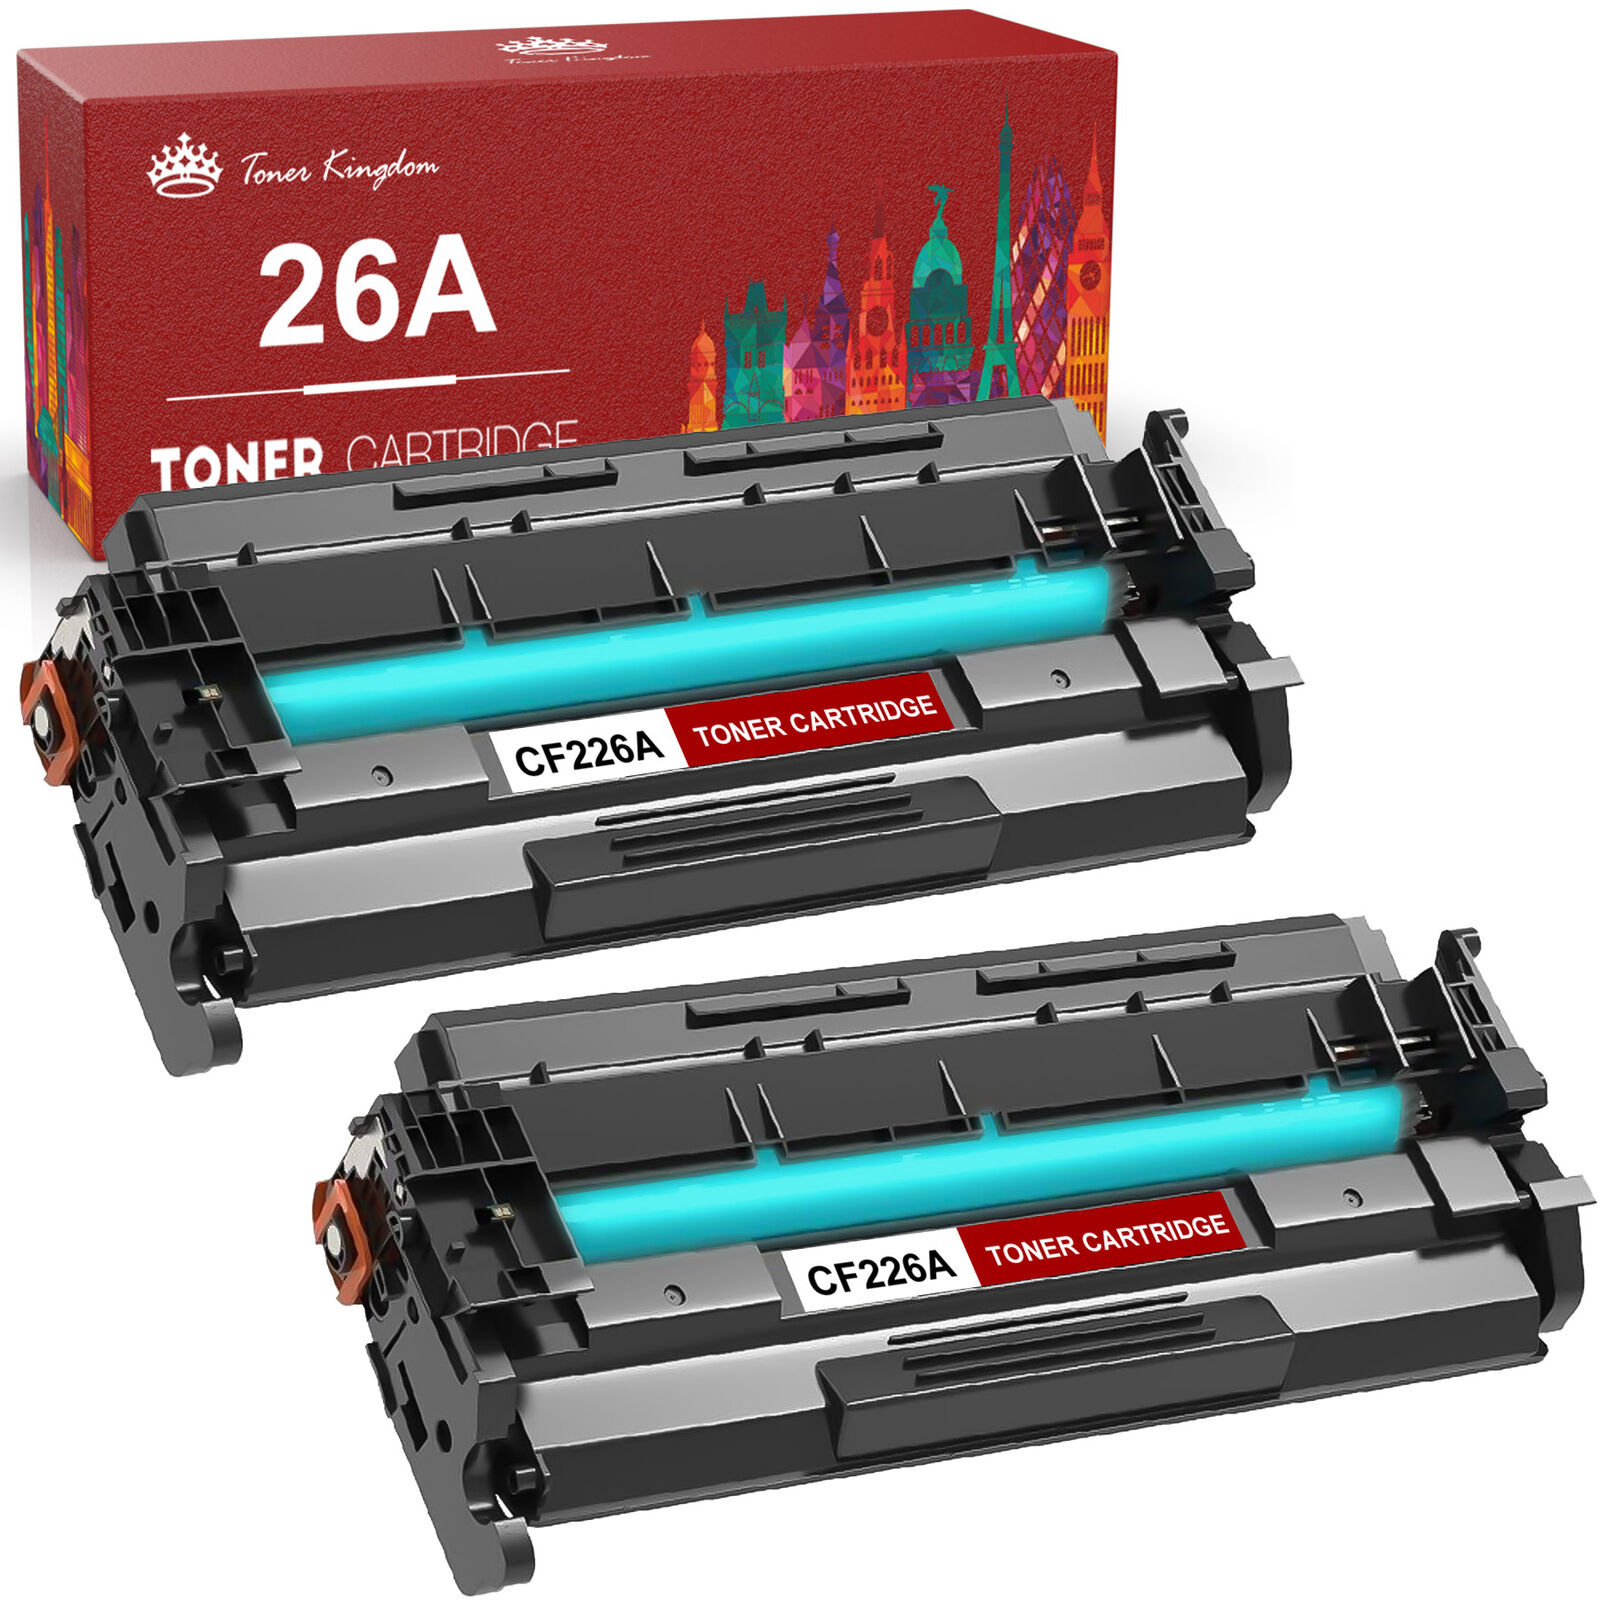 2PK CF226A For HP 26A 226A Black Toner Cartridge LaserJet M402n M426fdw M426fdn